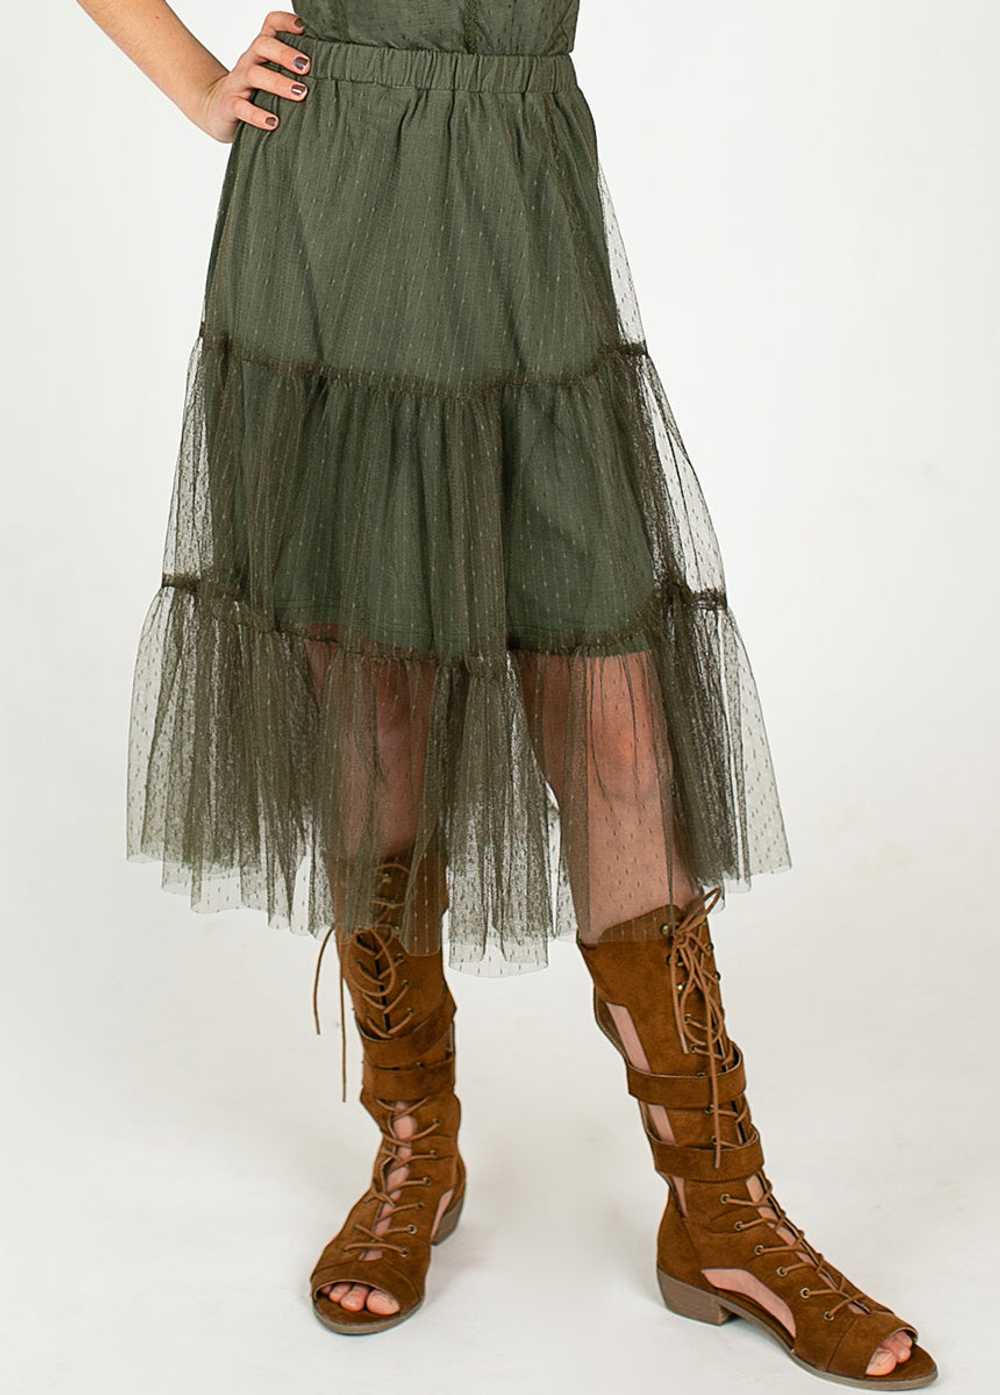 Joyfolie Rina Midi Skirt in Burnt Olive - image 3